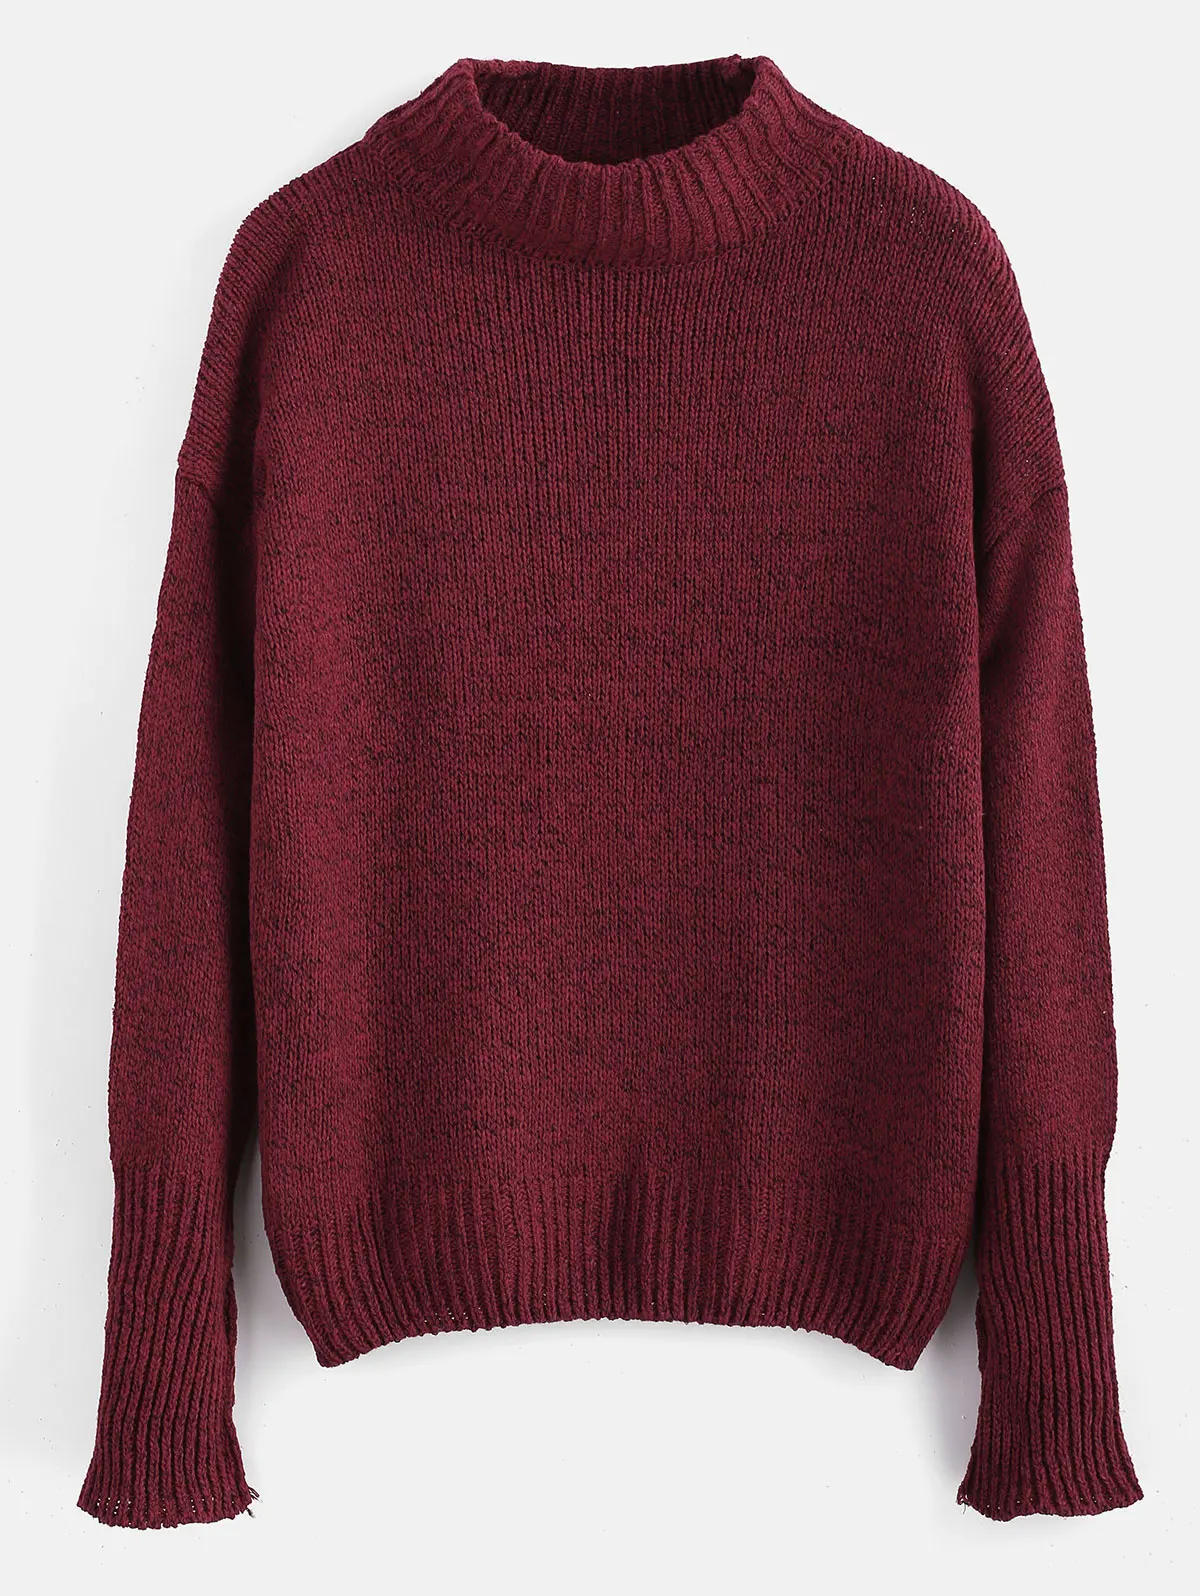 ZAFUL, теплый, меланжевый пуловер, свитер с открытыми плечами, круглый вырез, длинный рукав, хлопок, базовый свитер, осенние пуловеры, мода